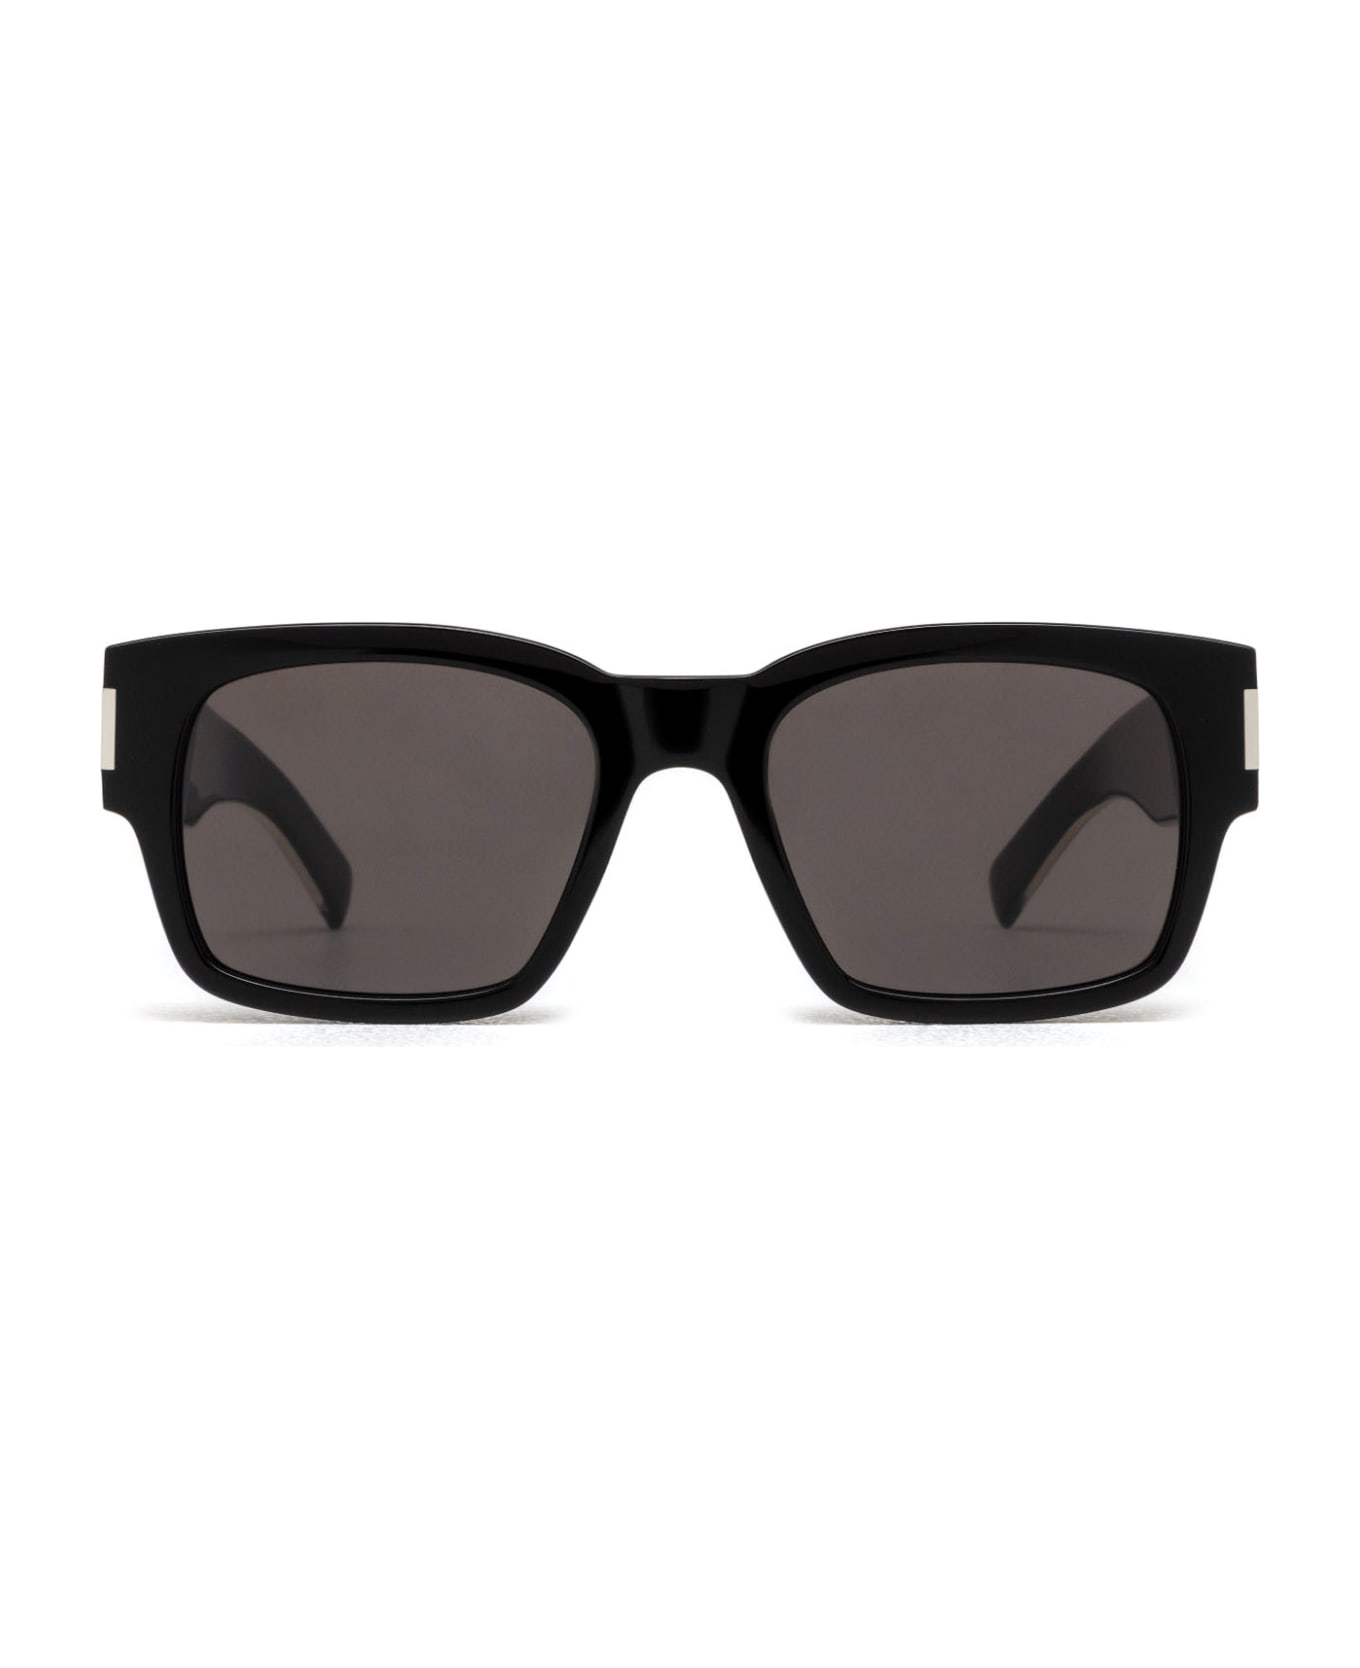 Saint Laurent Eyewear Sl 617 Black Sunglasses - Black